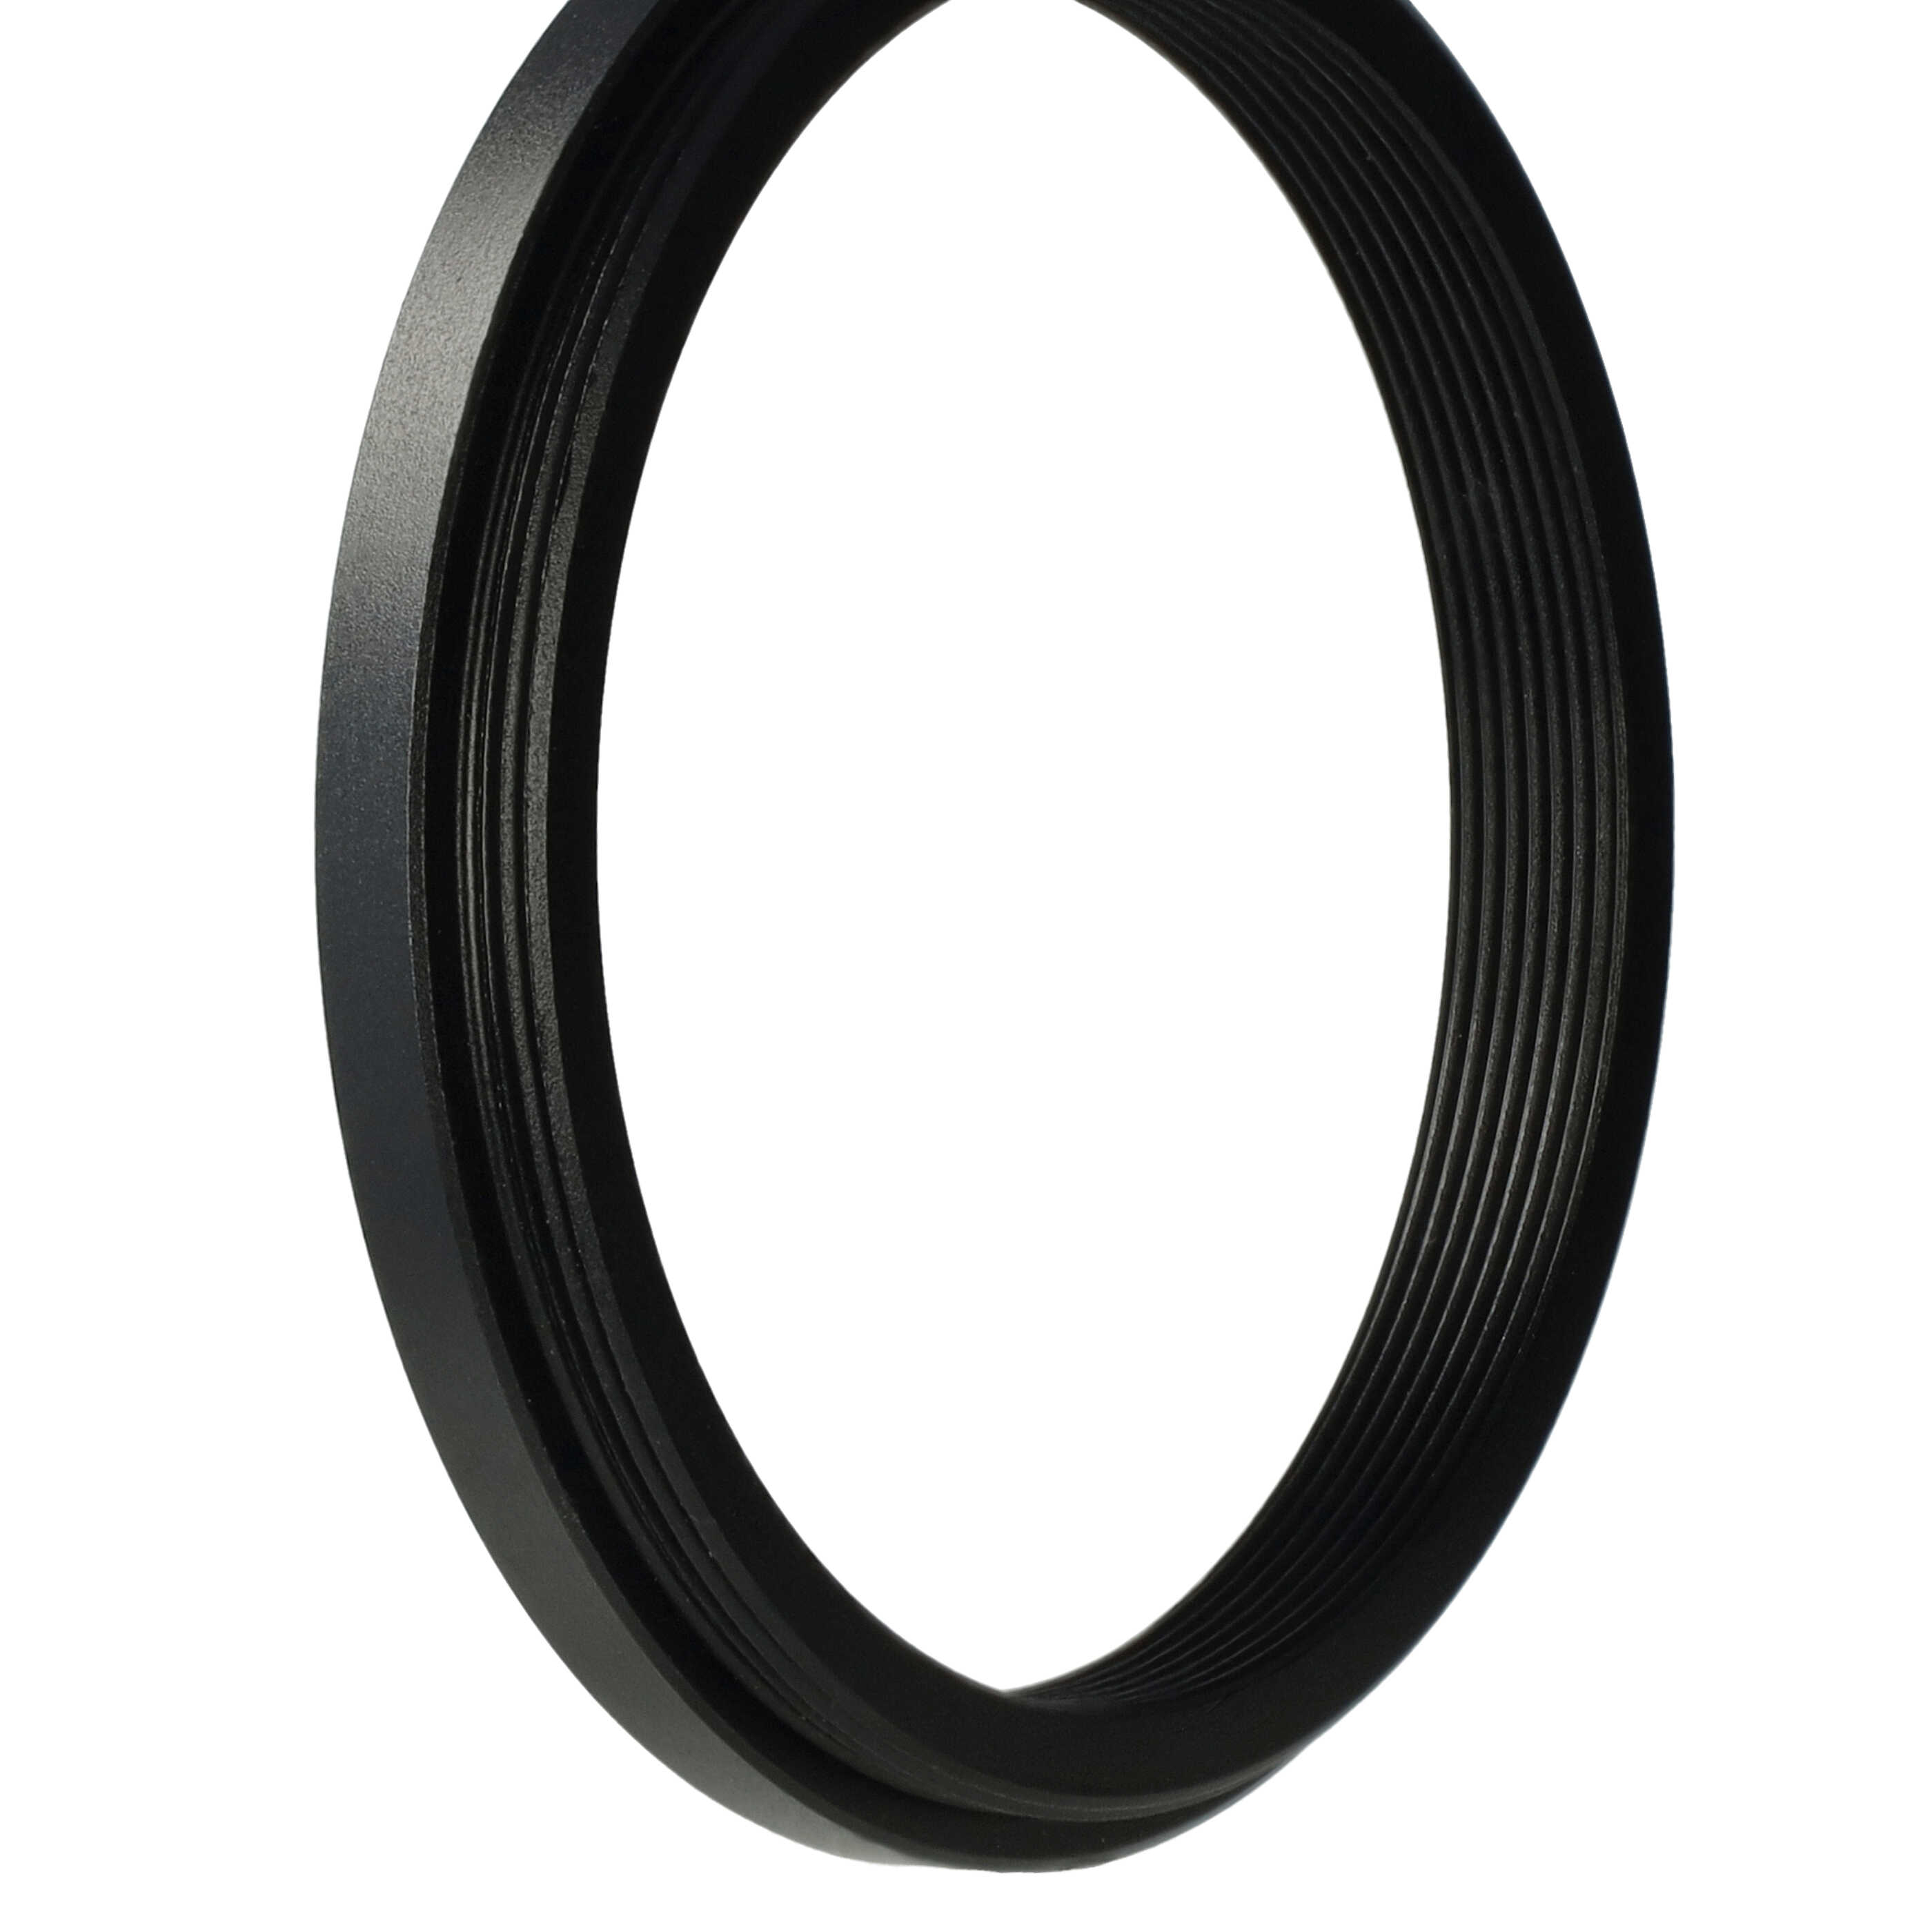 Redukcja filtrowa adapter Step-Down 52 mm - 46 mm pasująca do obiektywu - metal, czarny